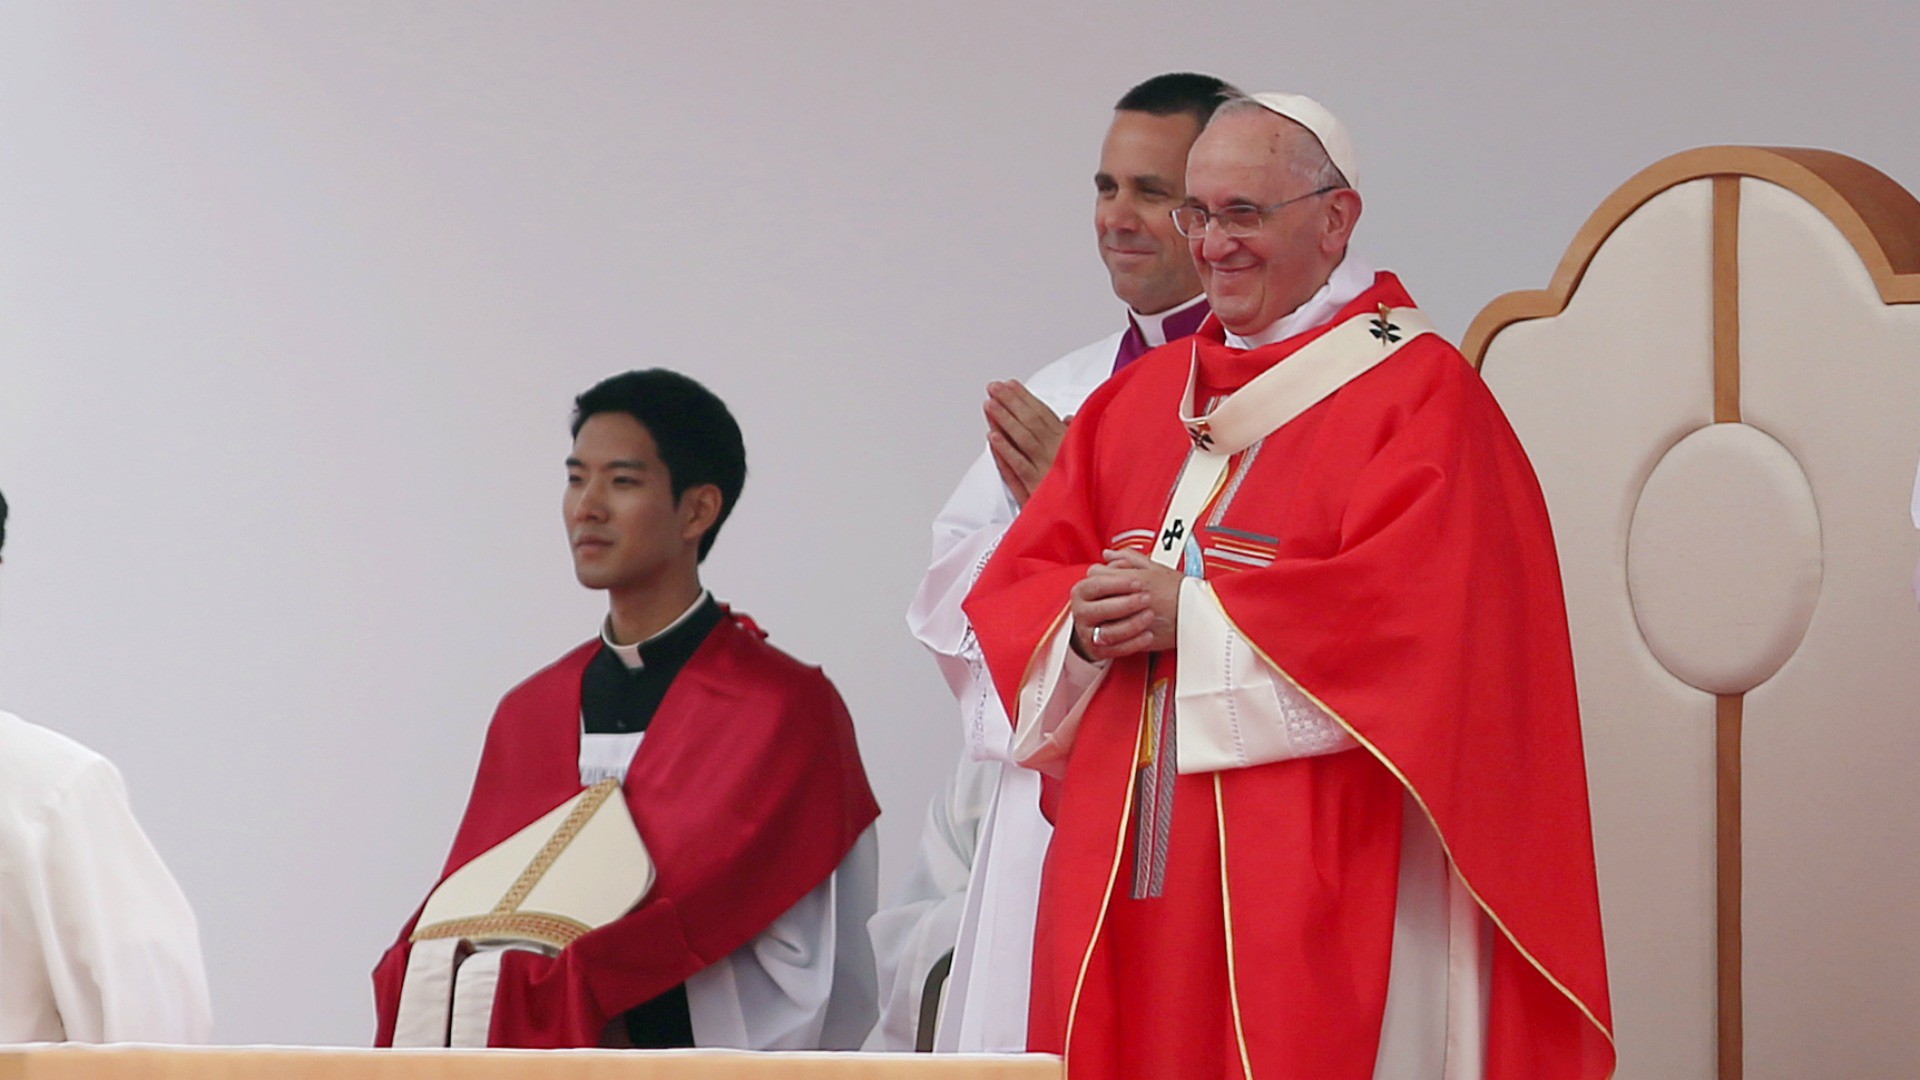 "L’acte de charité comporte une attention d’amour à l’autre“, a déclaré le pape lors du 10e anniversaire de "Deus caritas est", la première encyclique de Benoît XVI. (Photo: Flickr/Korea.net/CC BY-SA 2.0)